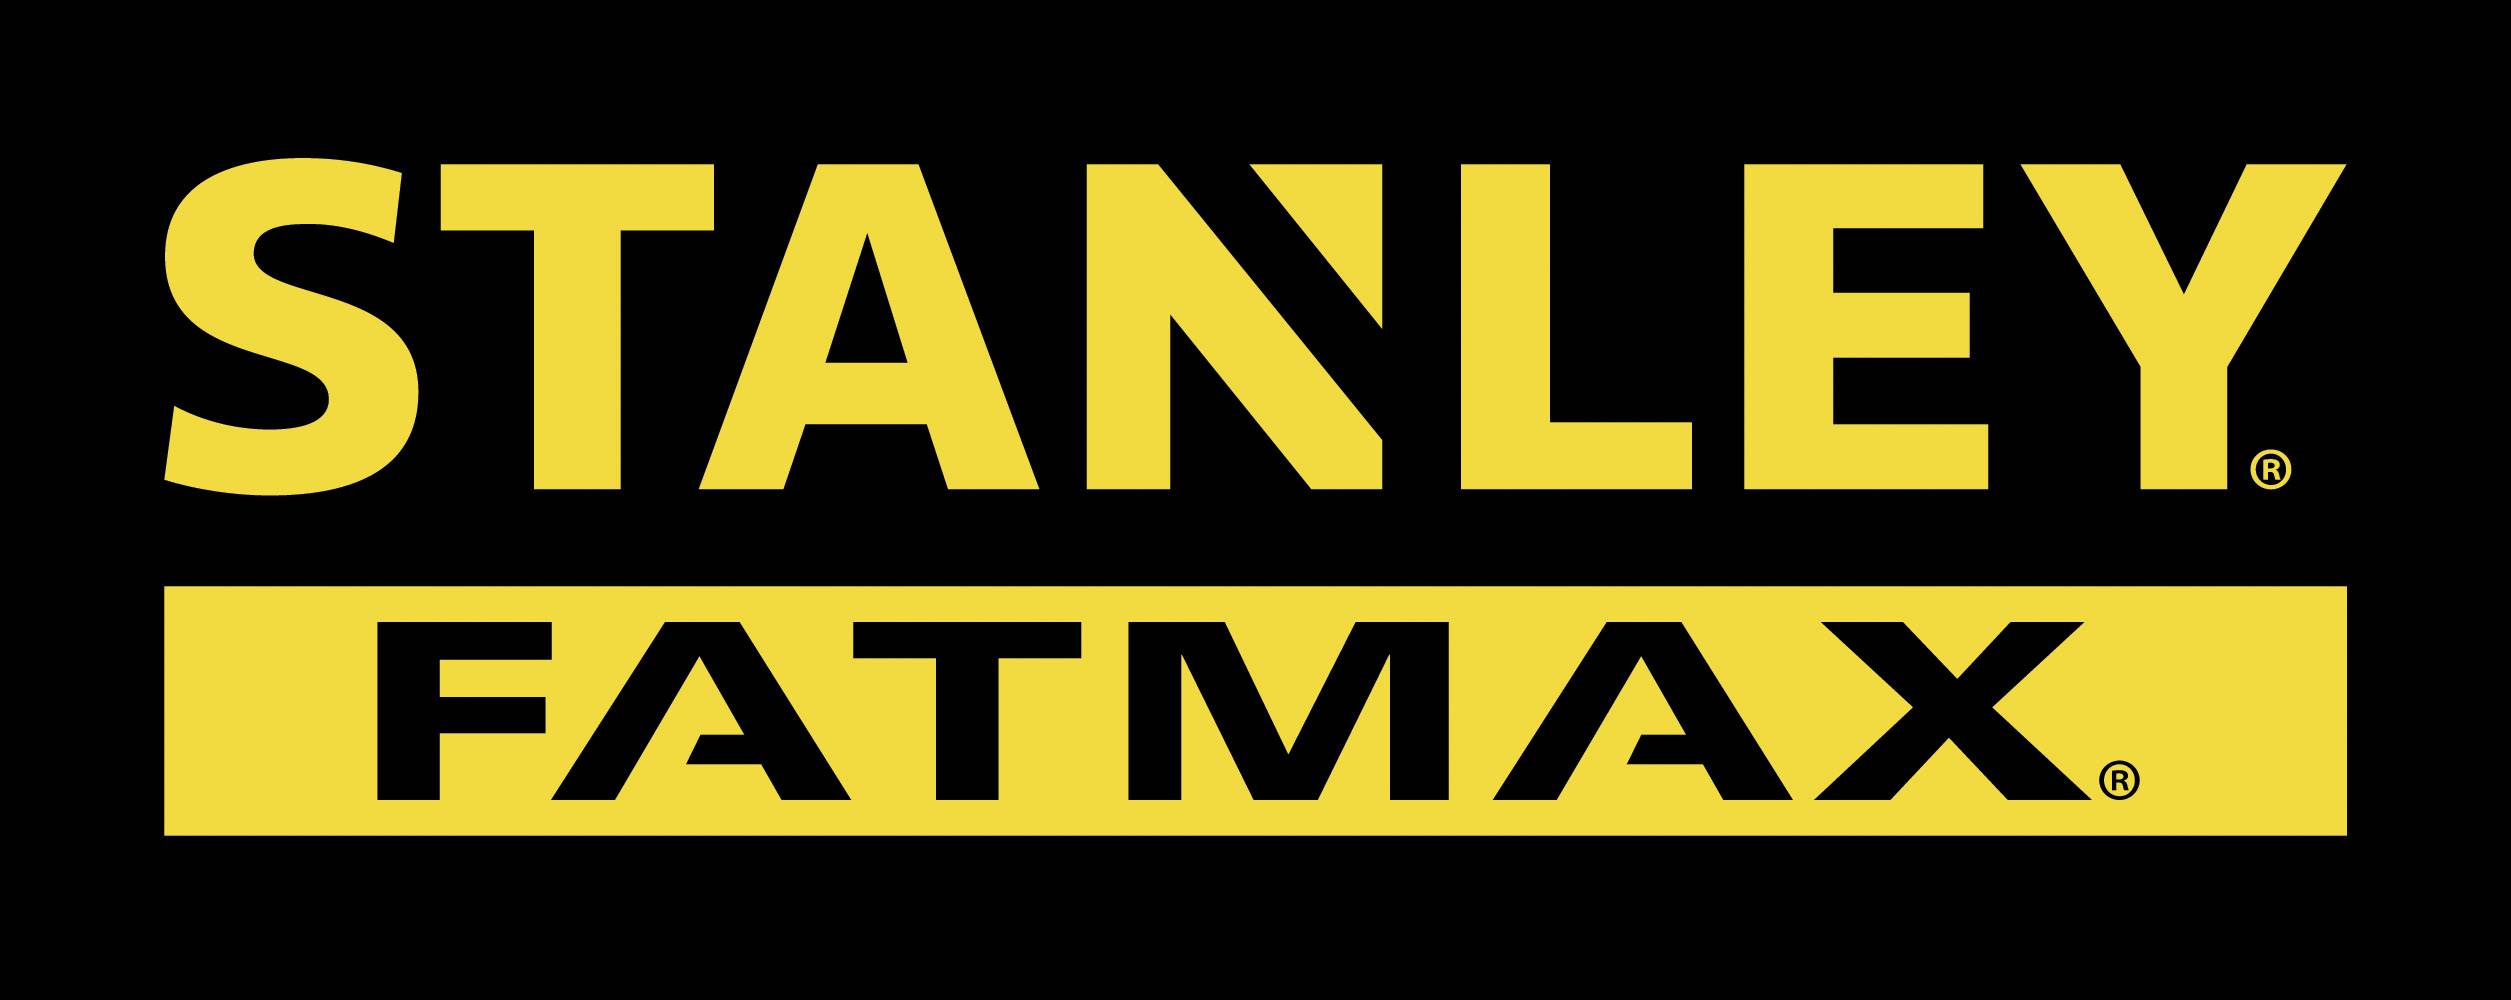 Stanley FatMax logo